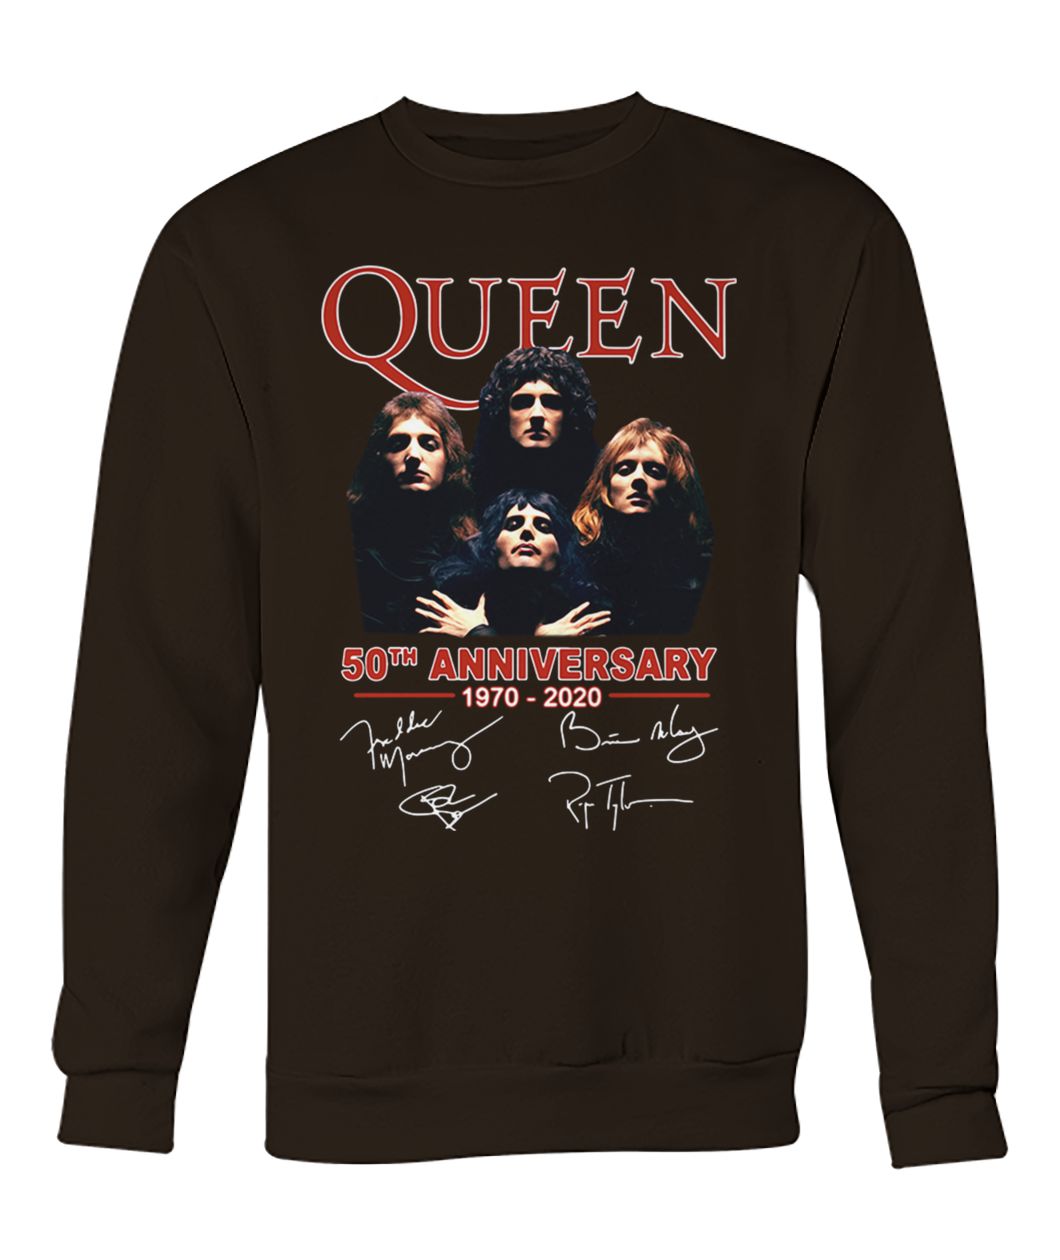 Queen 50th anniversary 1970 2020 signatures crew neck sweatshirt